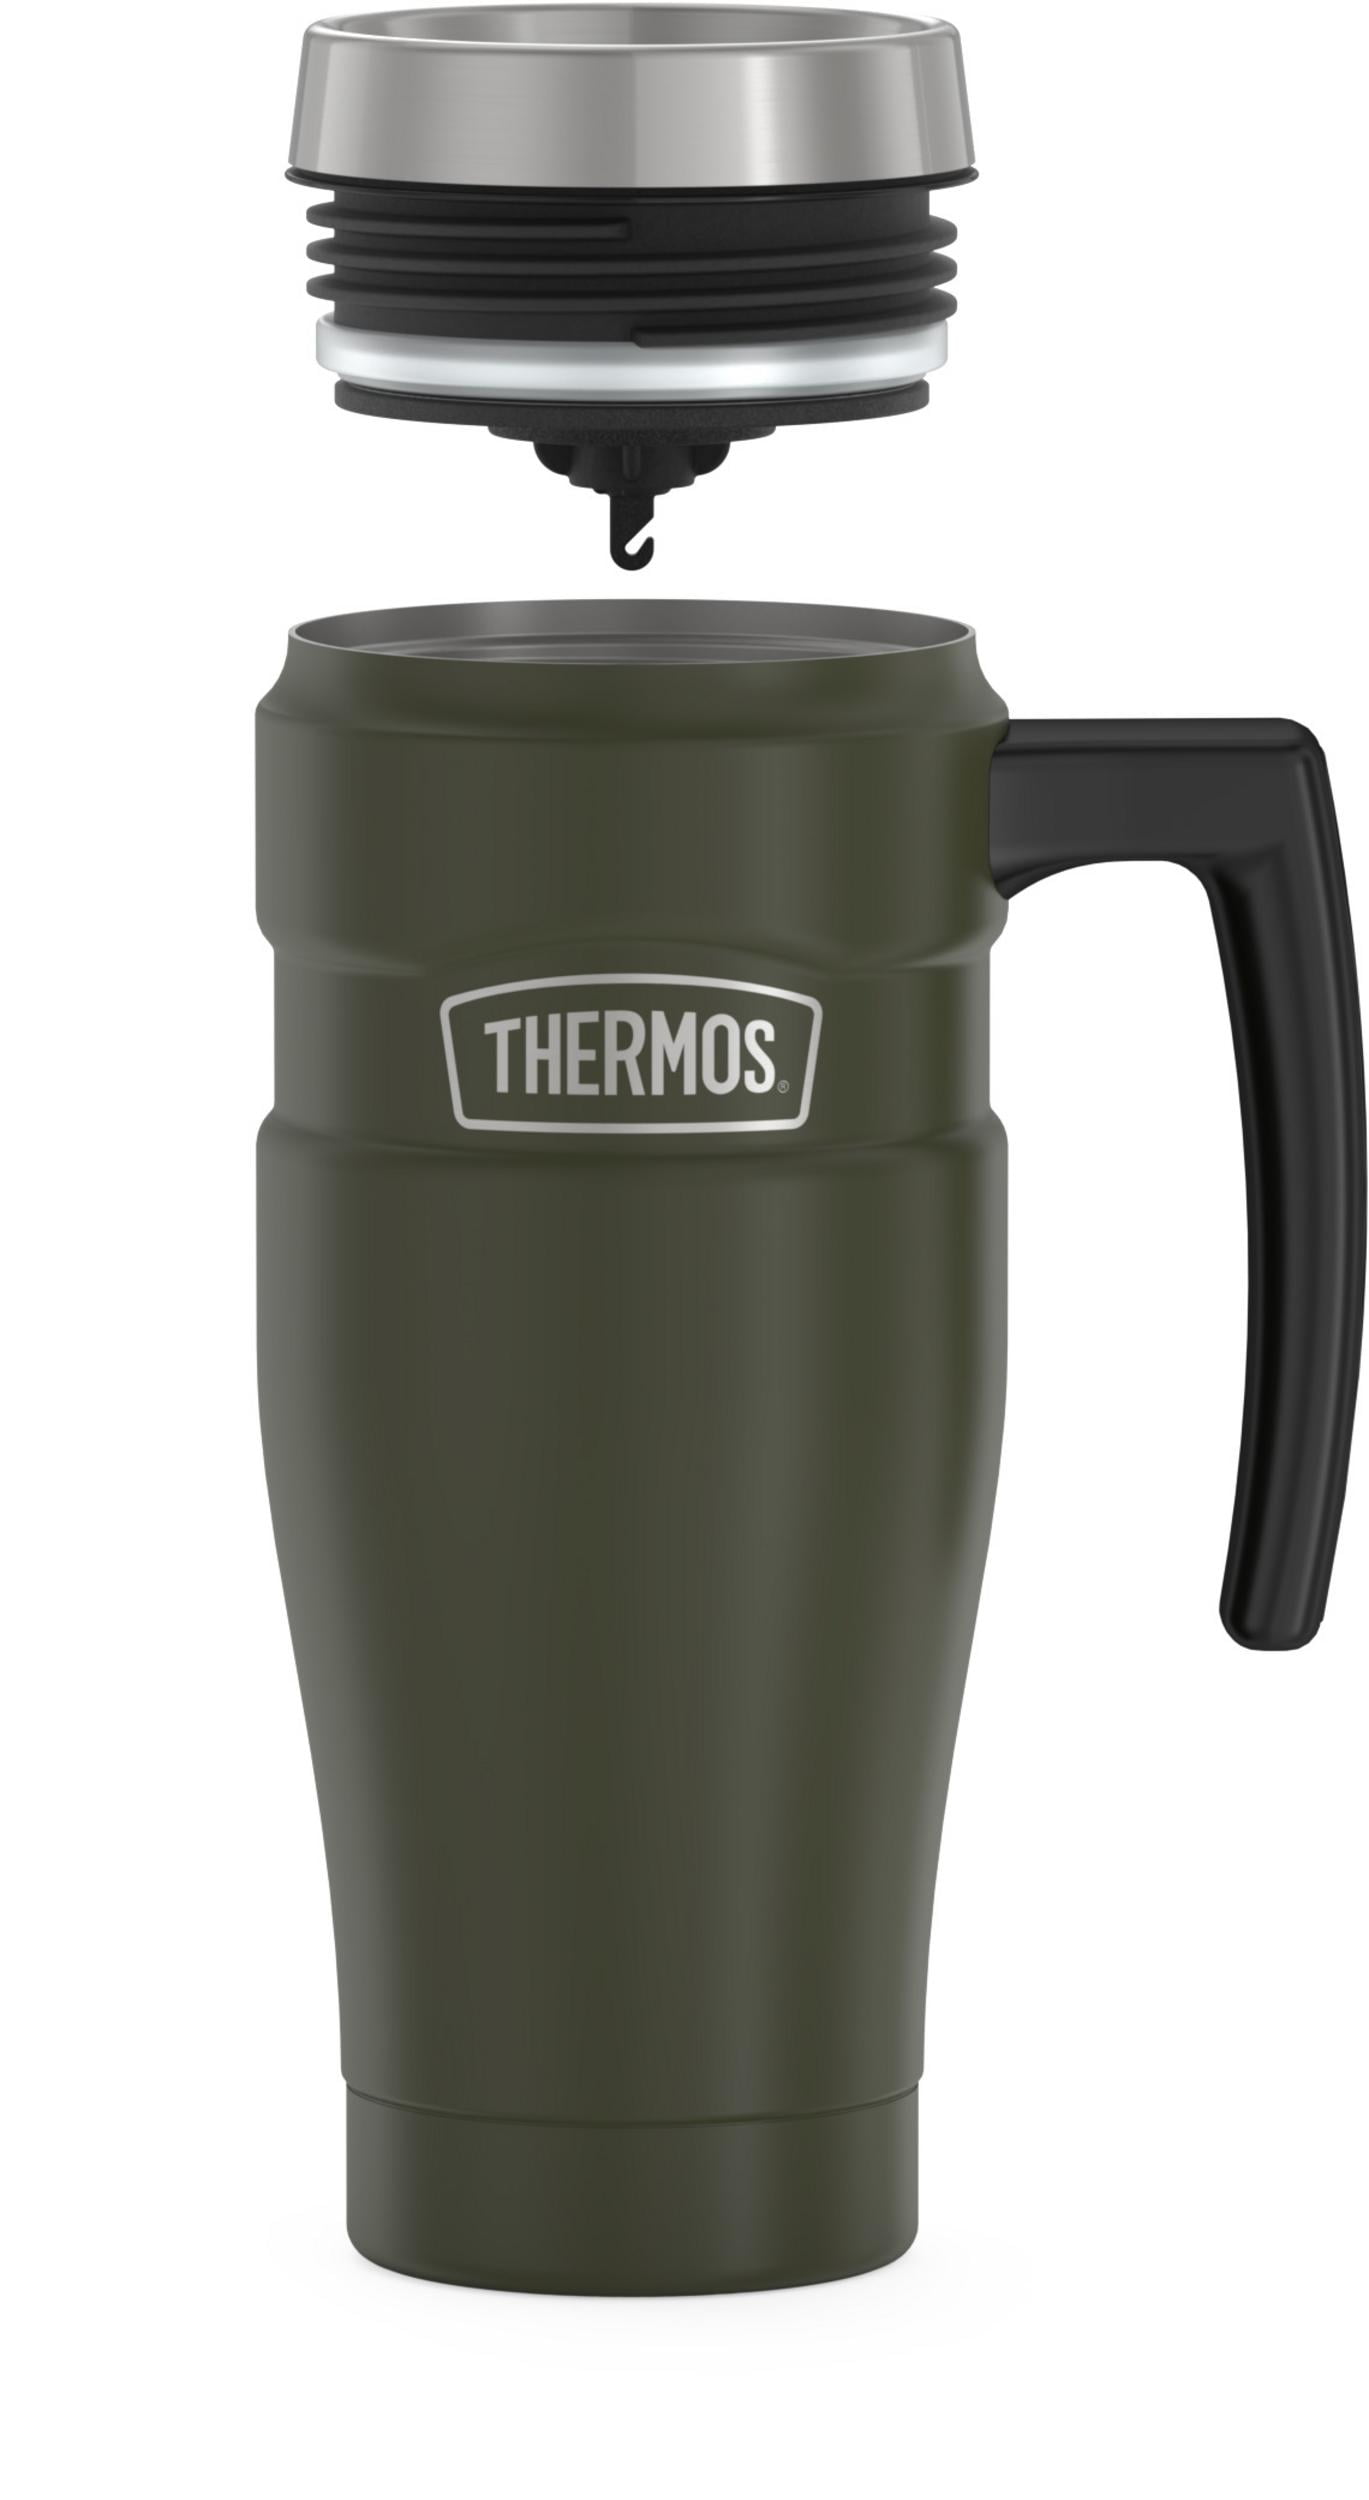 Raomdityat Stainless Steel Bullet Vacuum Cup Thermos Cup Mug 12oz, Army  Green